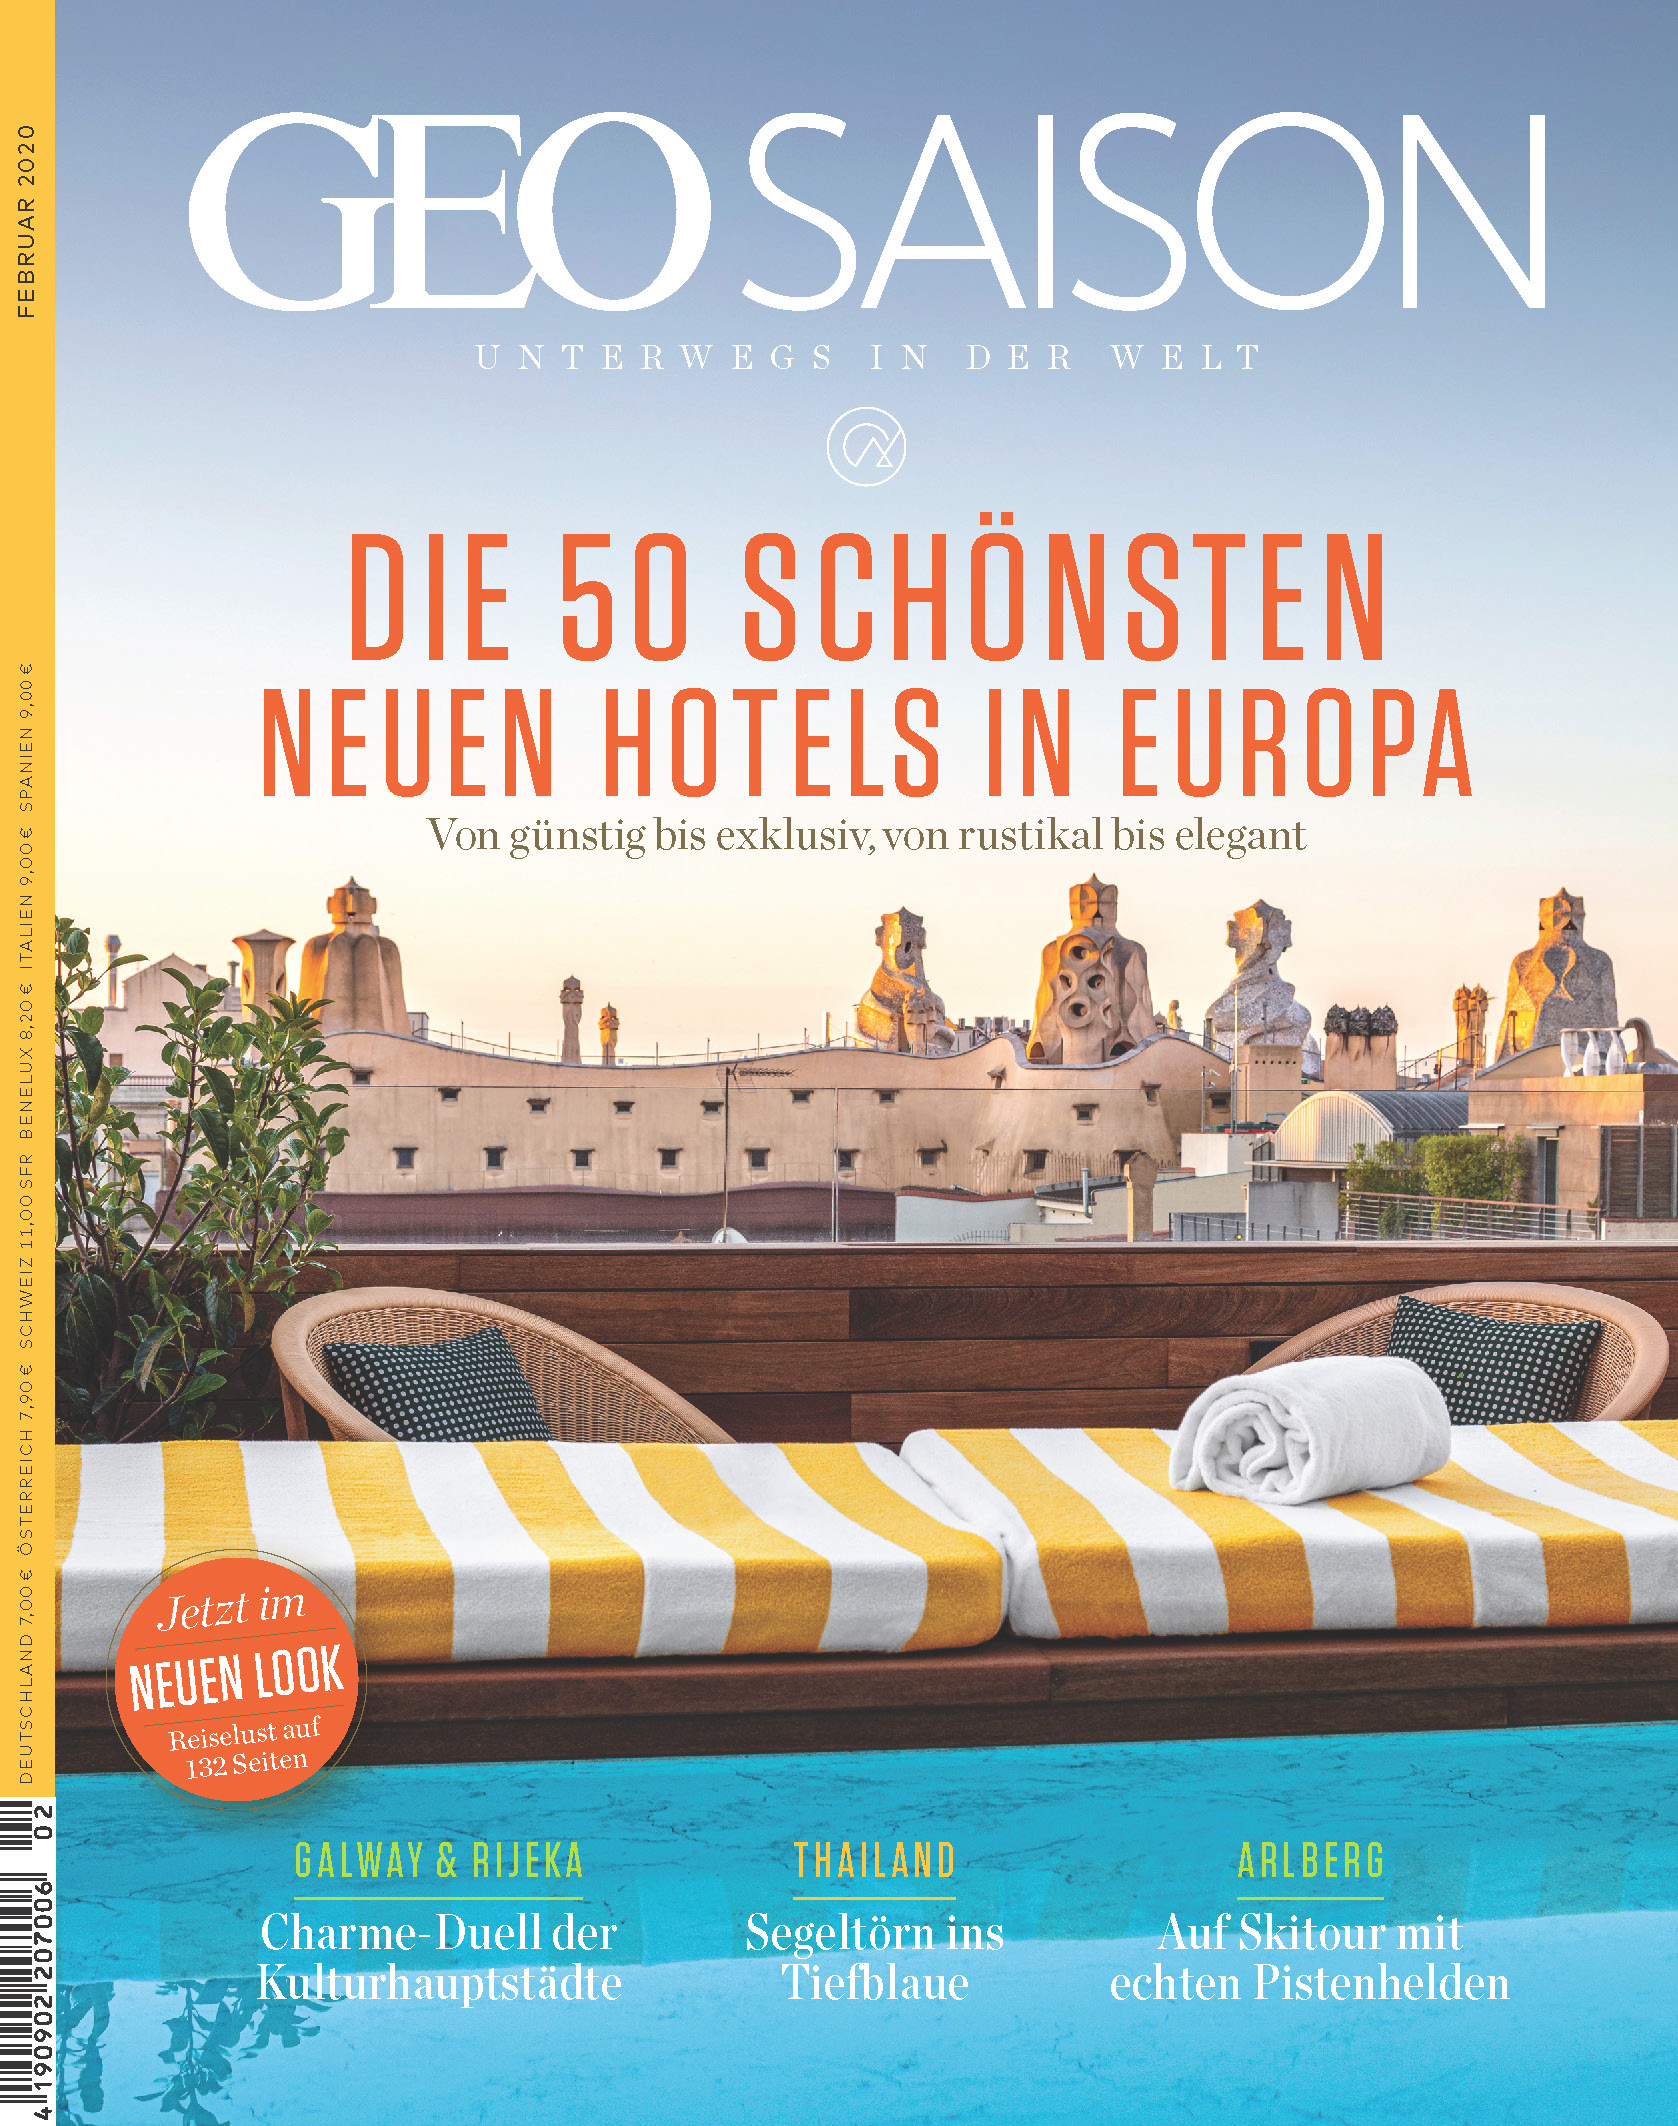 GEO SAISON zeigt die 50 schönsten neuen Hotels in Deutschland und Europa